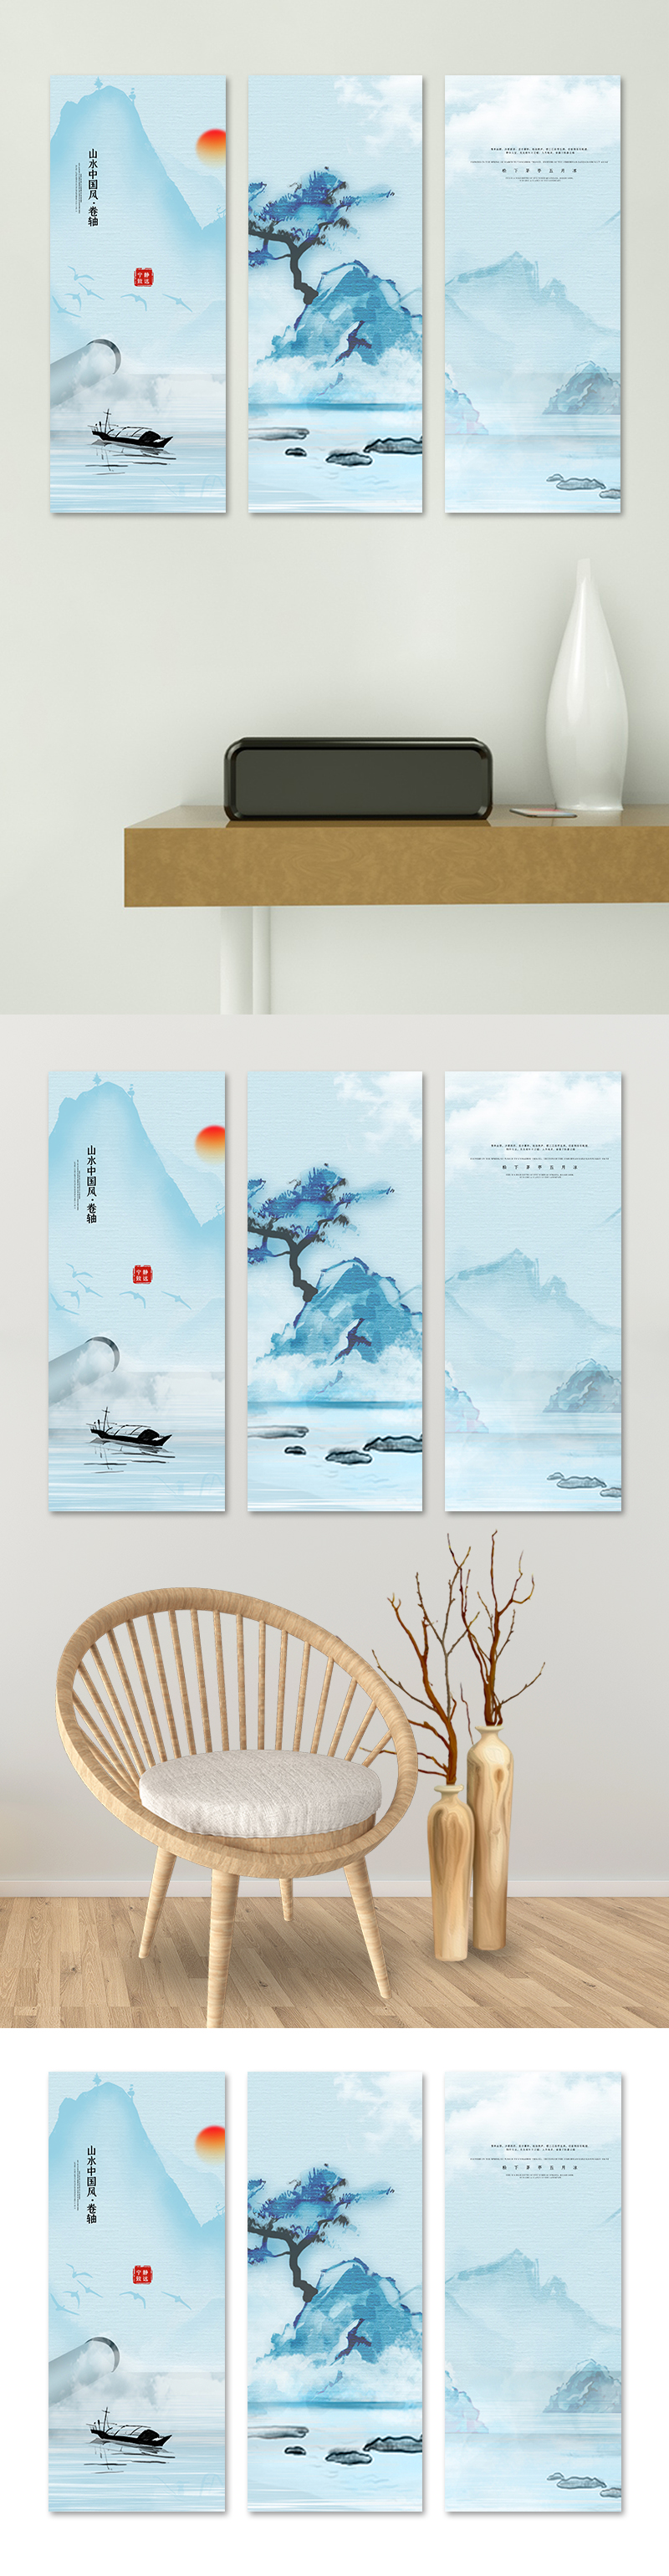 中式山水装饰画卷轴蓝色中国风装修效果图图片